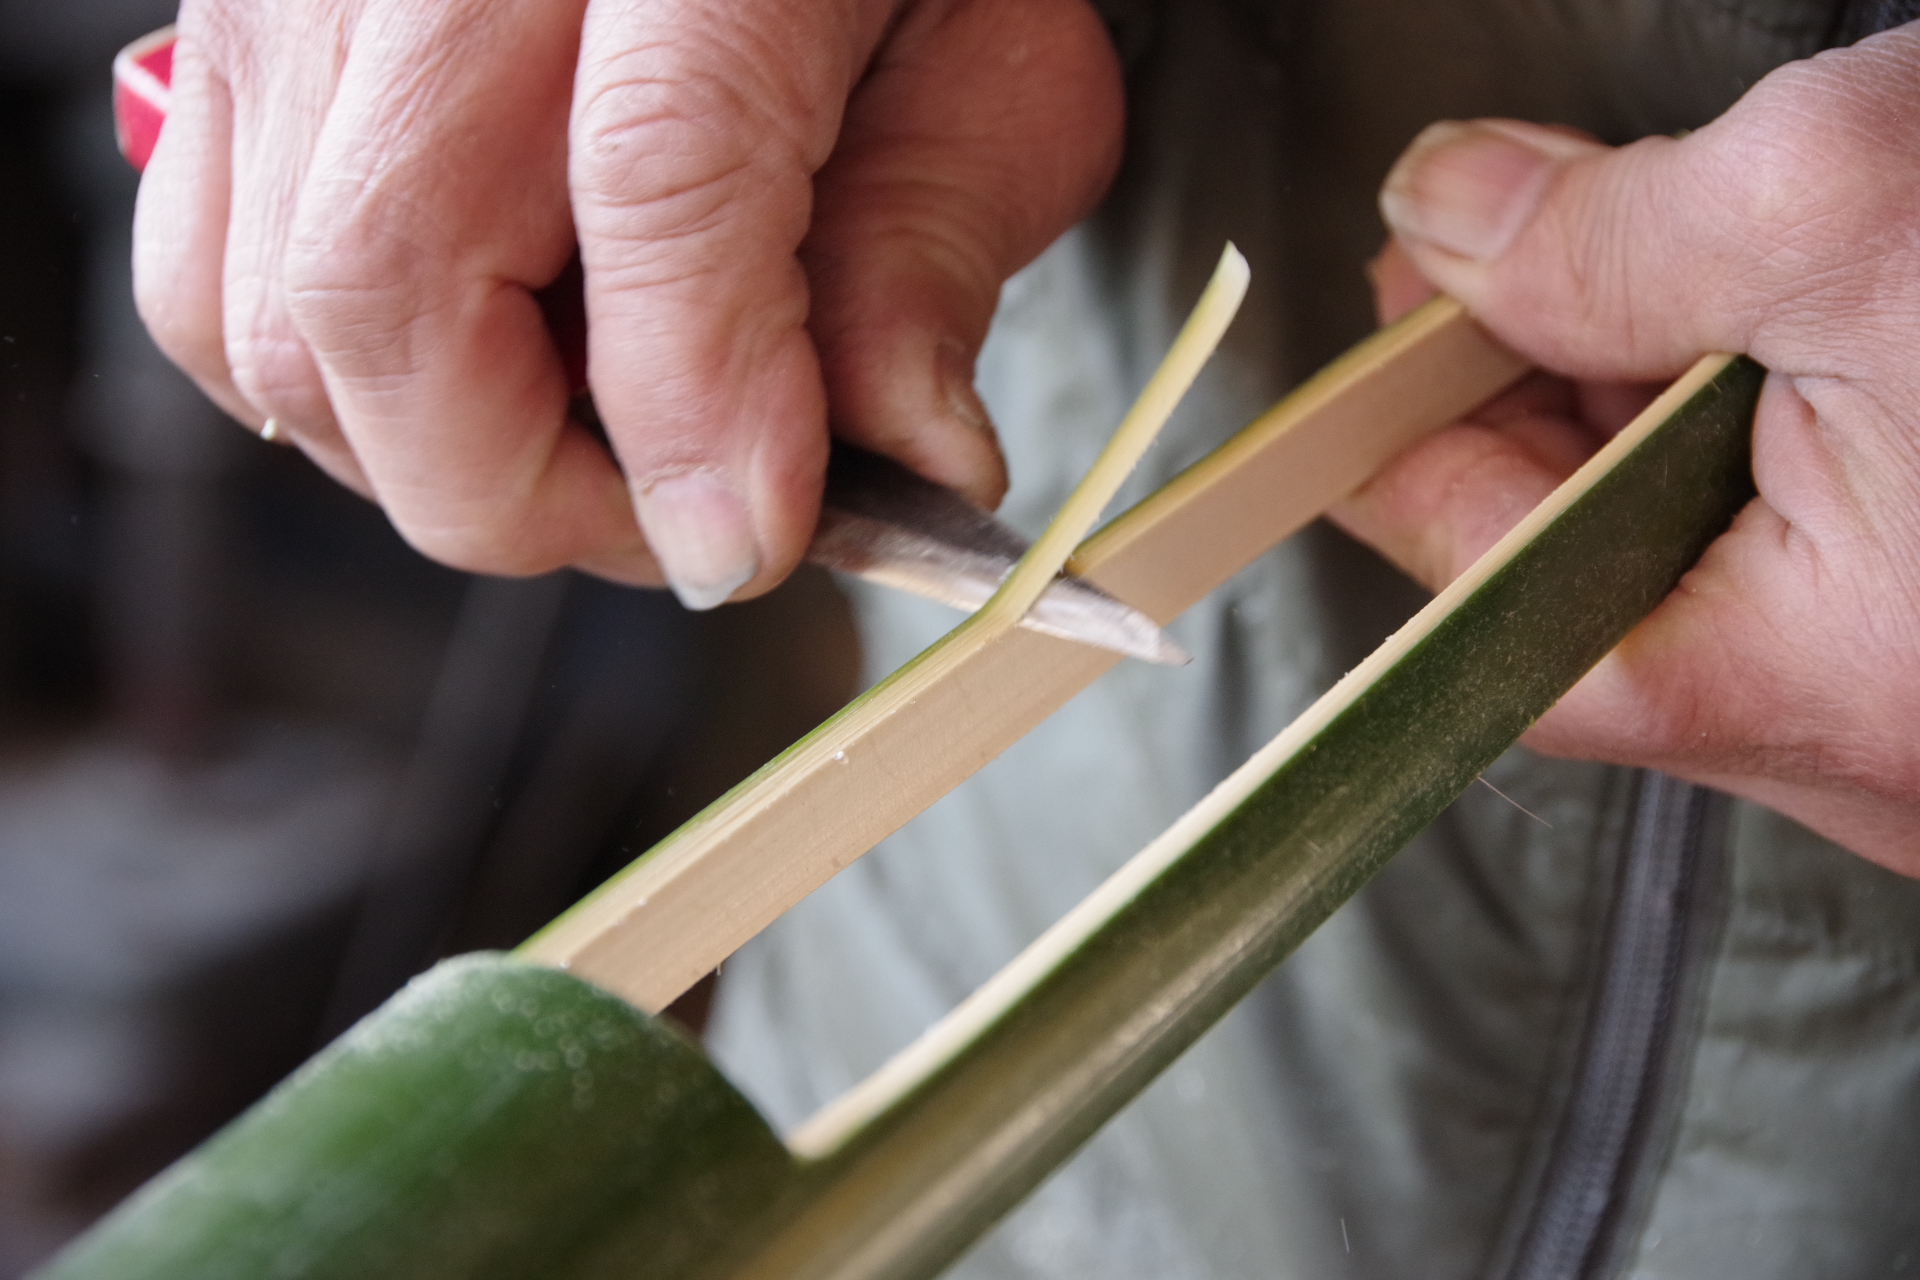 竹細工 たけざいく を知る 竹細工の製品 おもちゃ 体験スポット 粋 Iki